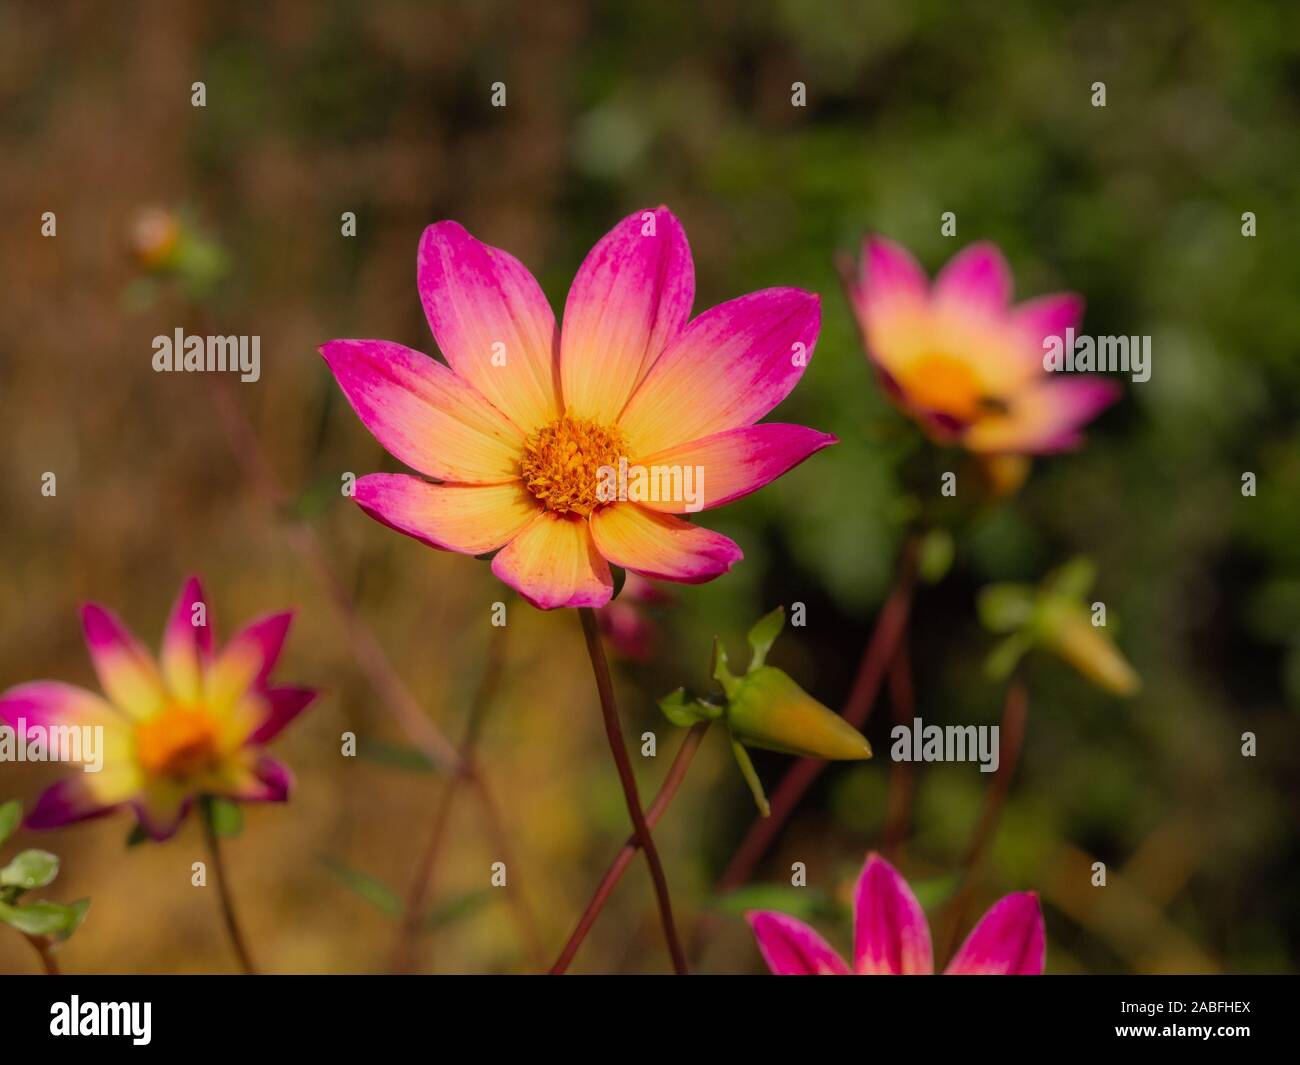 Ziemlich einzigen Dahlie Blüten mit rosa und gelben Blütenblättern in einem herbstlichen Garten Stockfoto